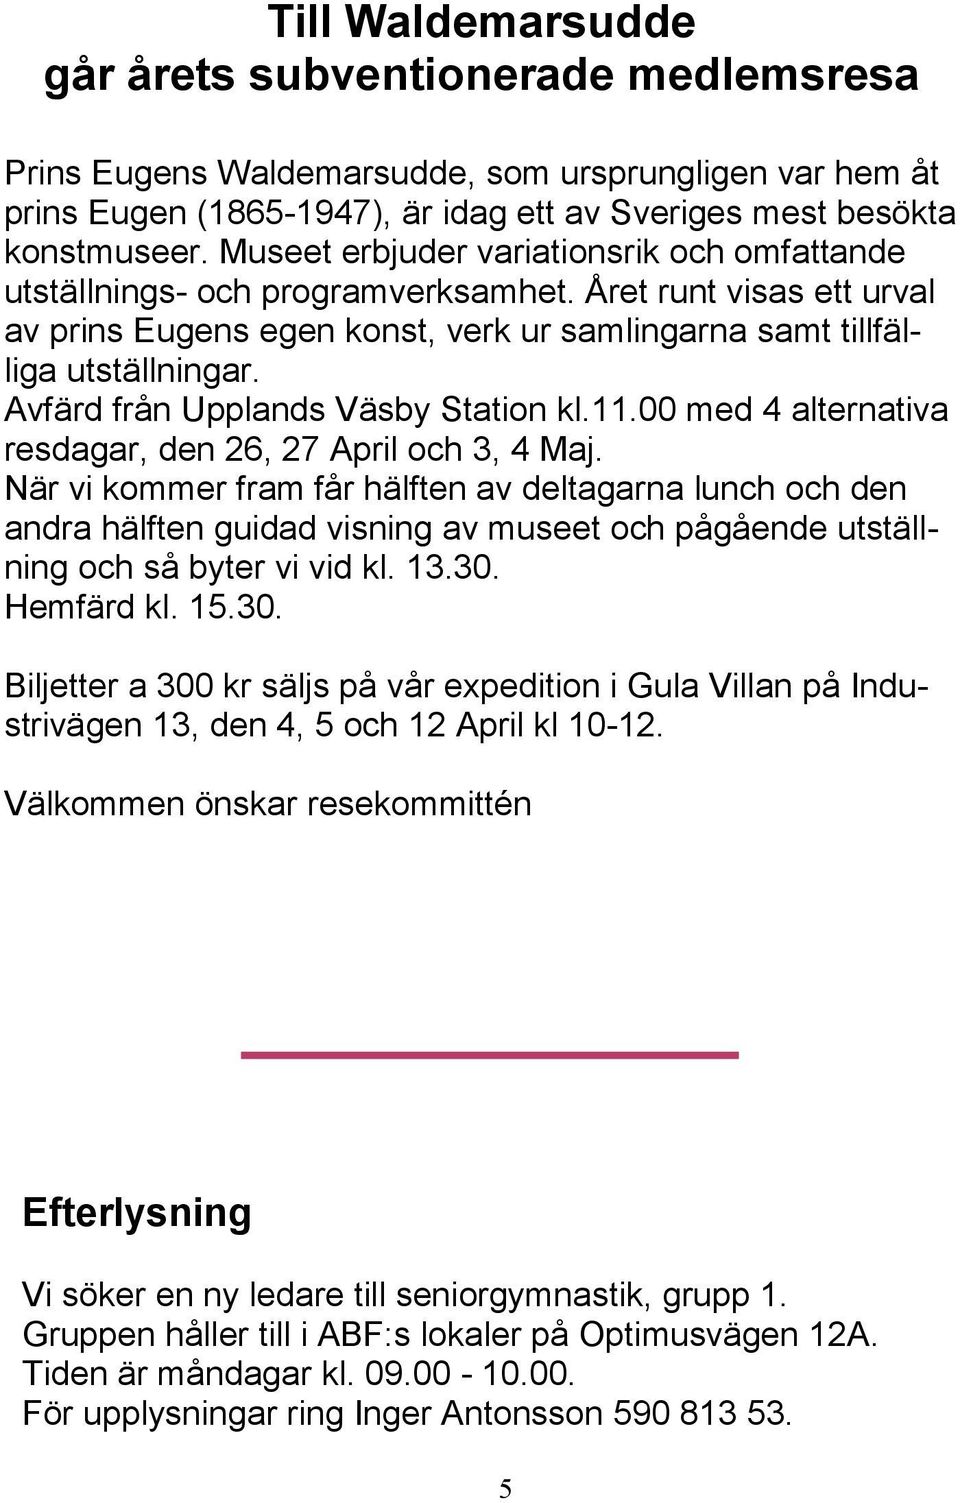 Avfärd från Upplands Väsby Station kl.11.00 med 4 alternativa resdagar, den 26, 27 April och 3, 4 Maj.